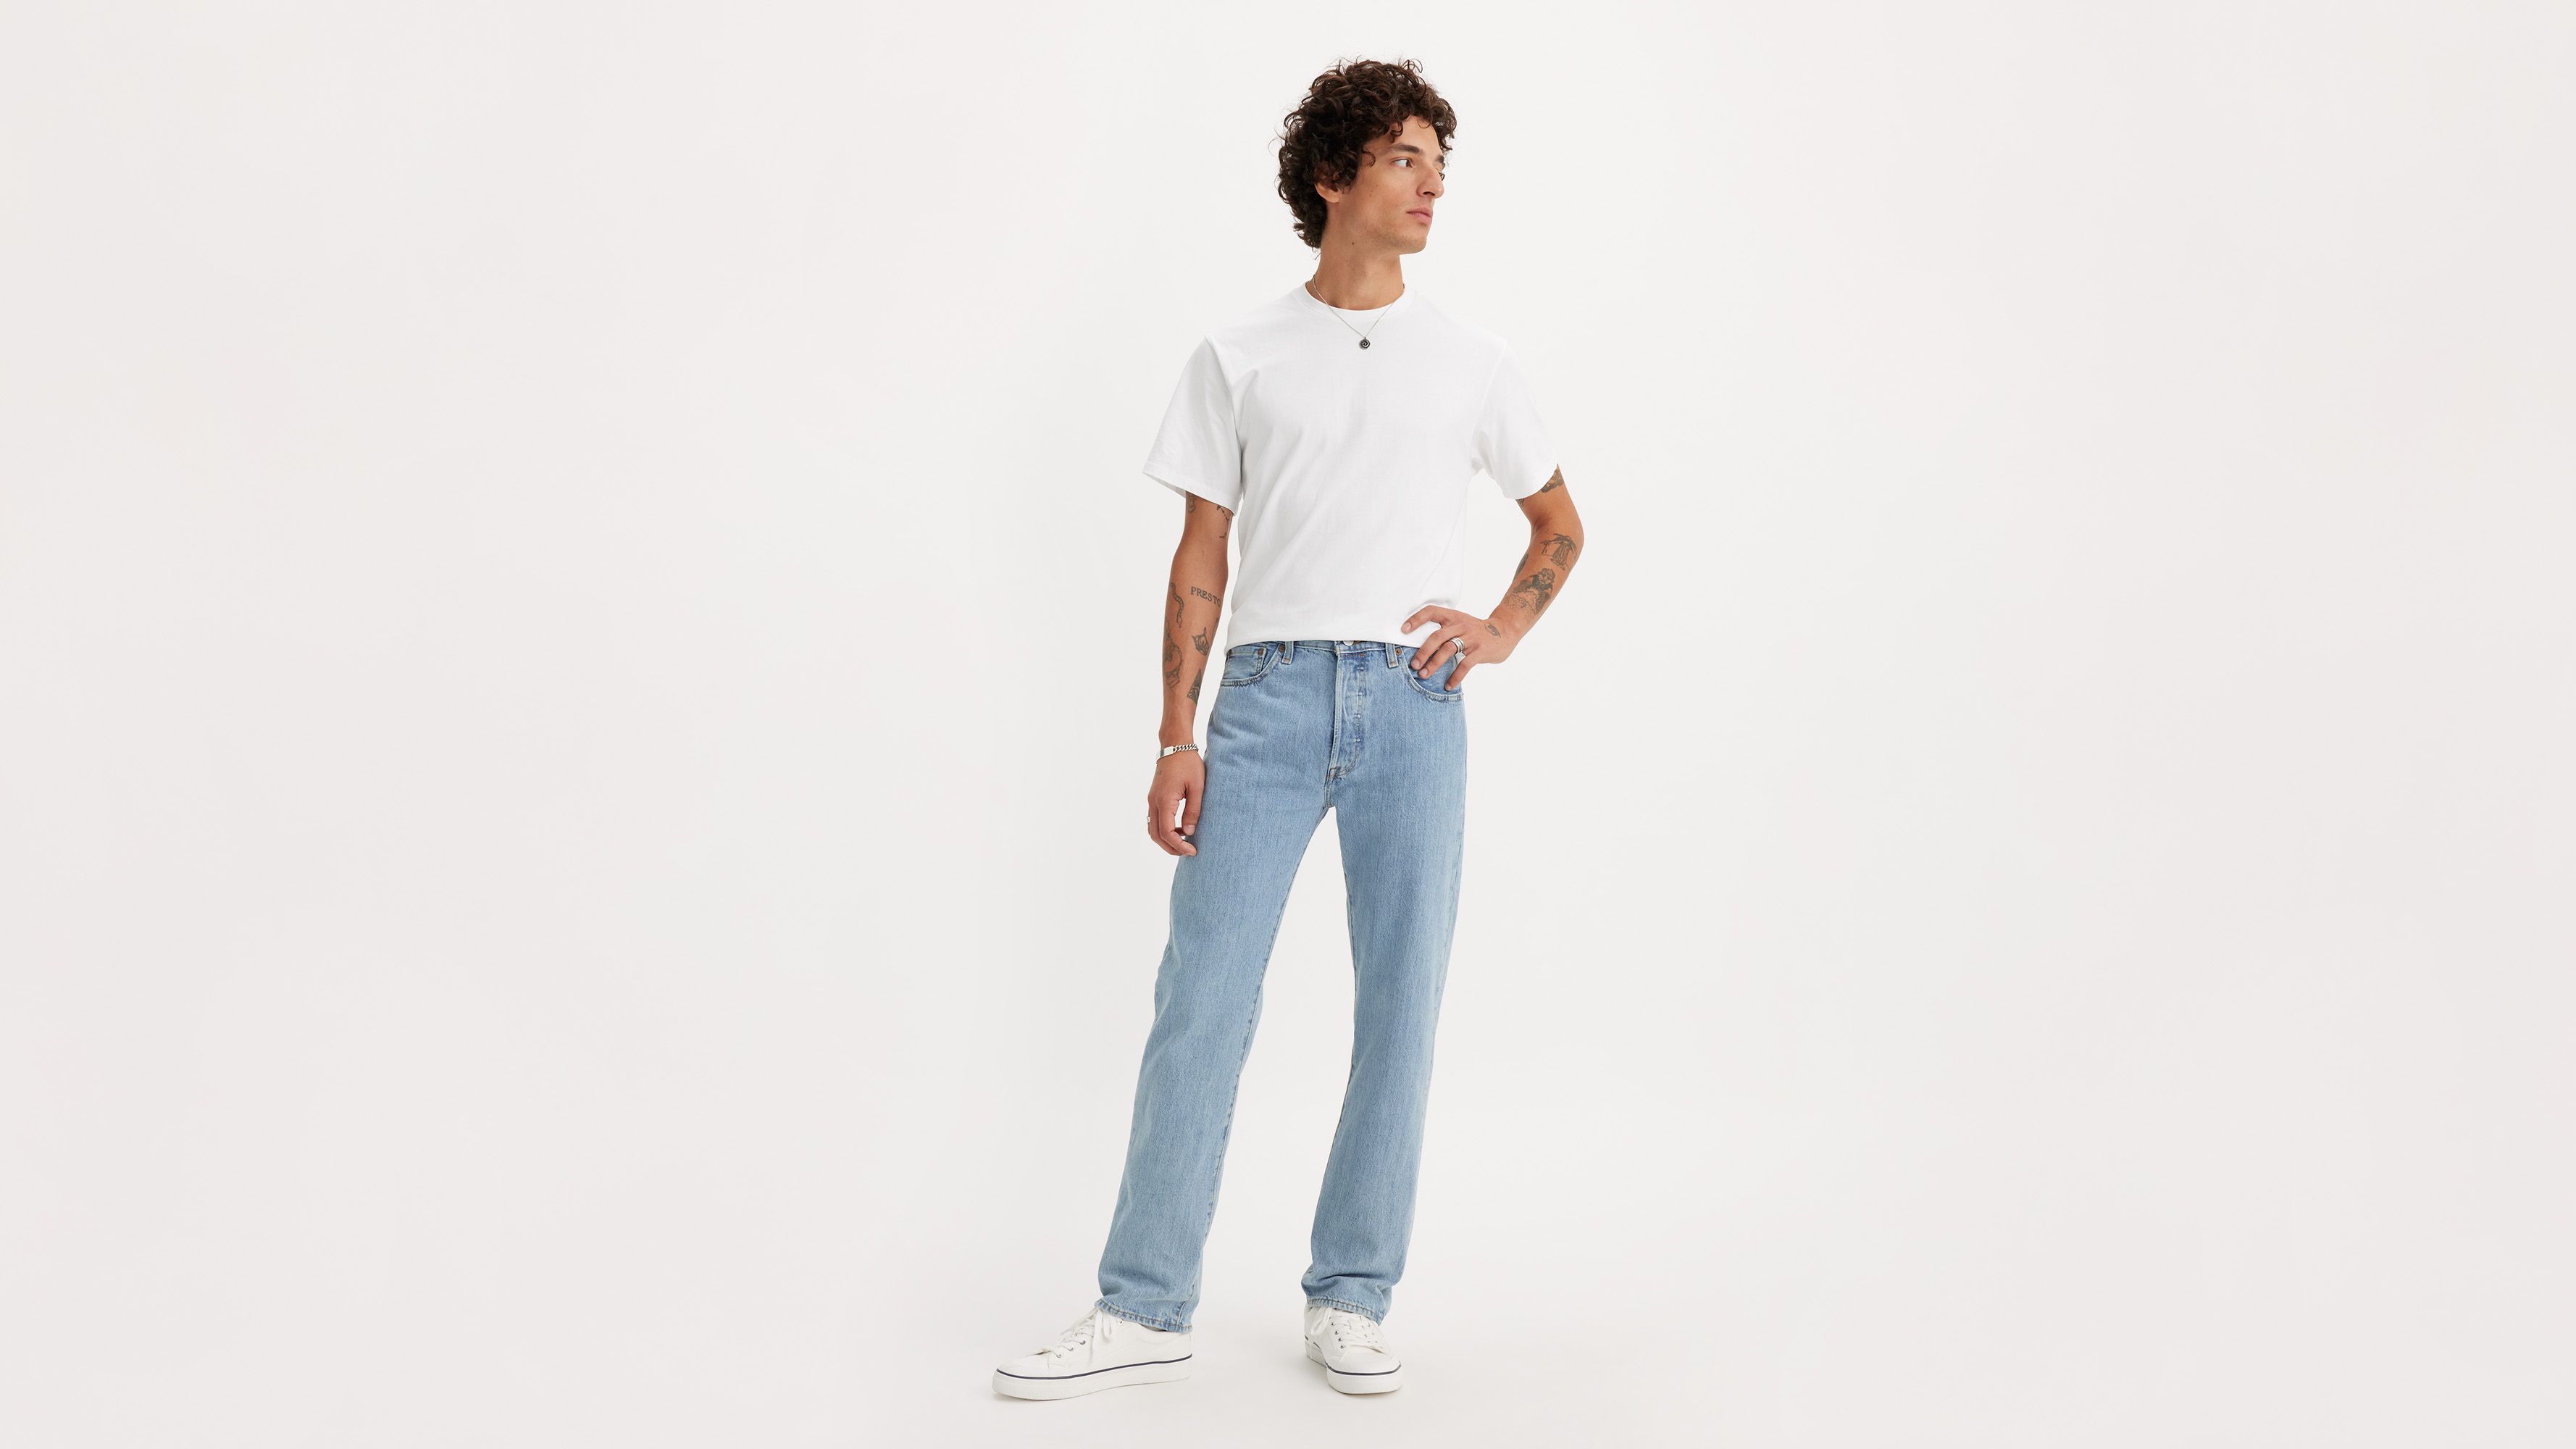 levis jeans for men